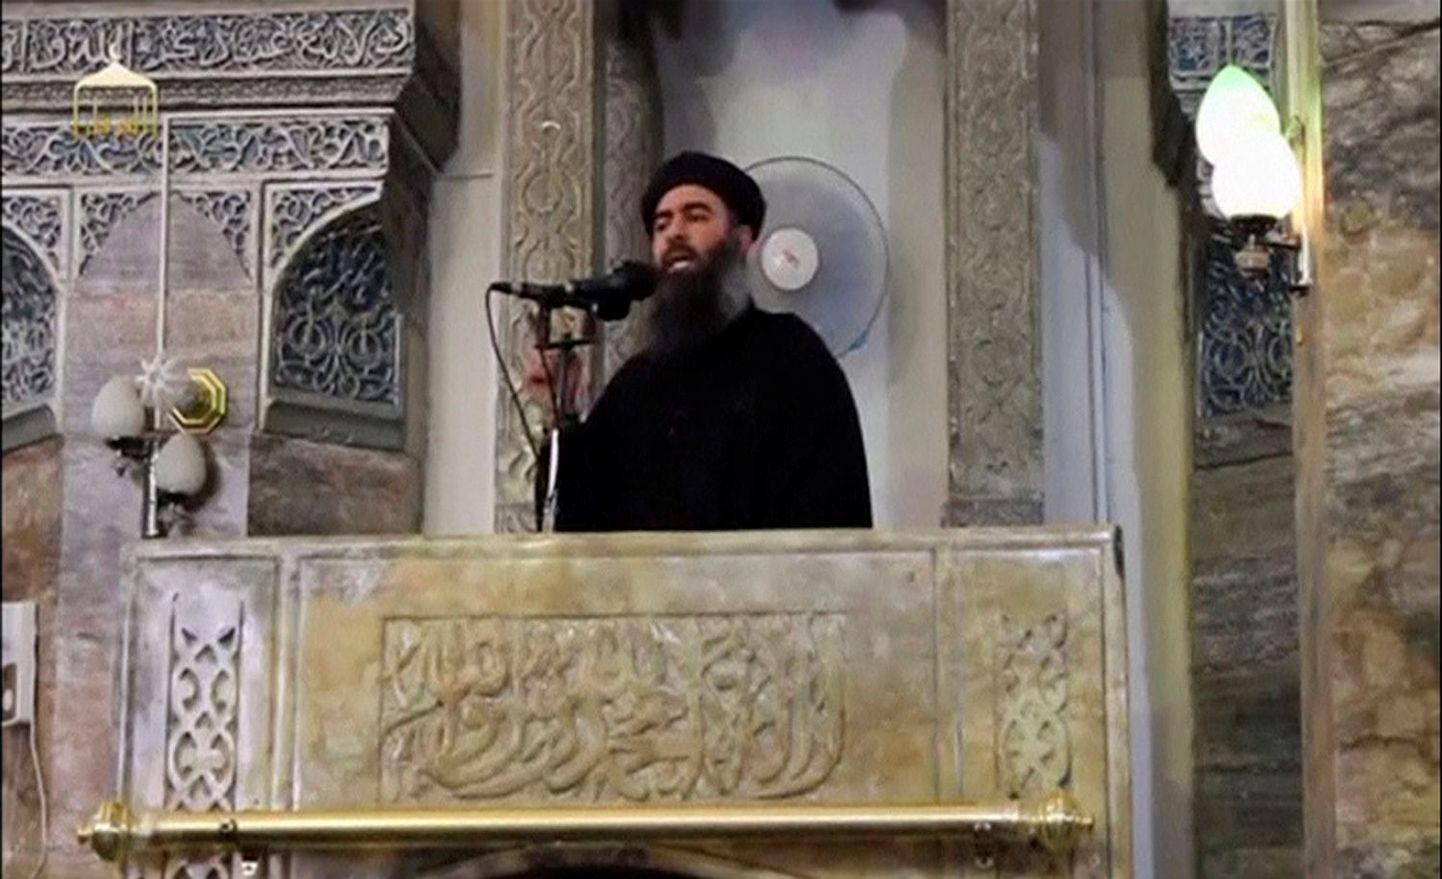 Pilt, millel on arvatavasti ISISe juht Abu Bakr al-Baghdadi